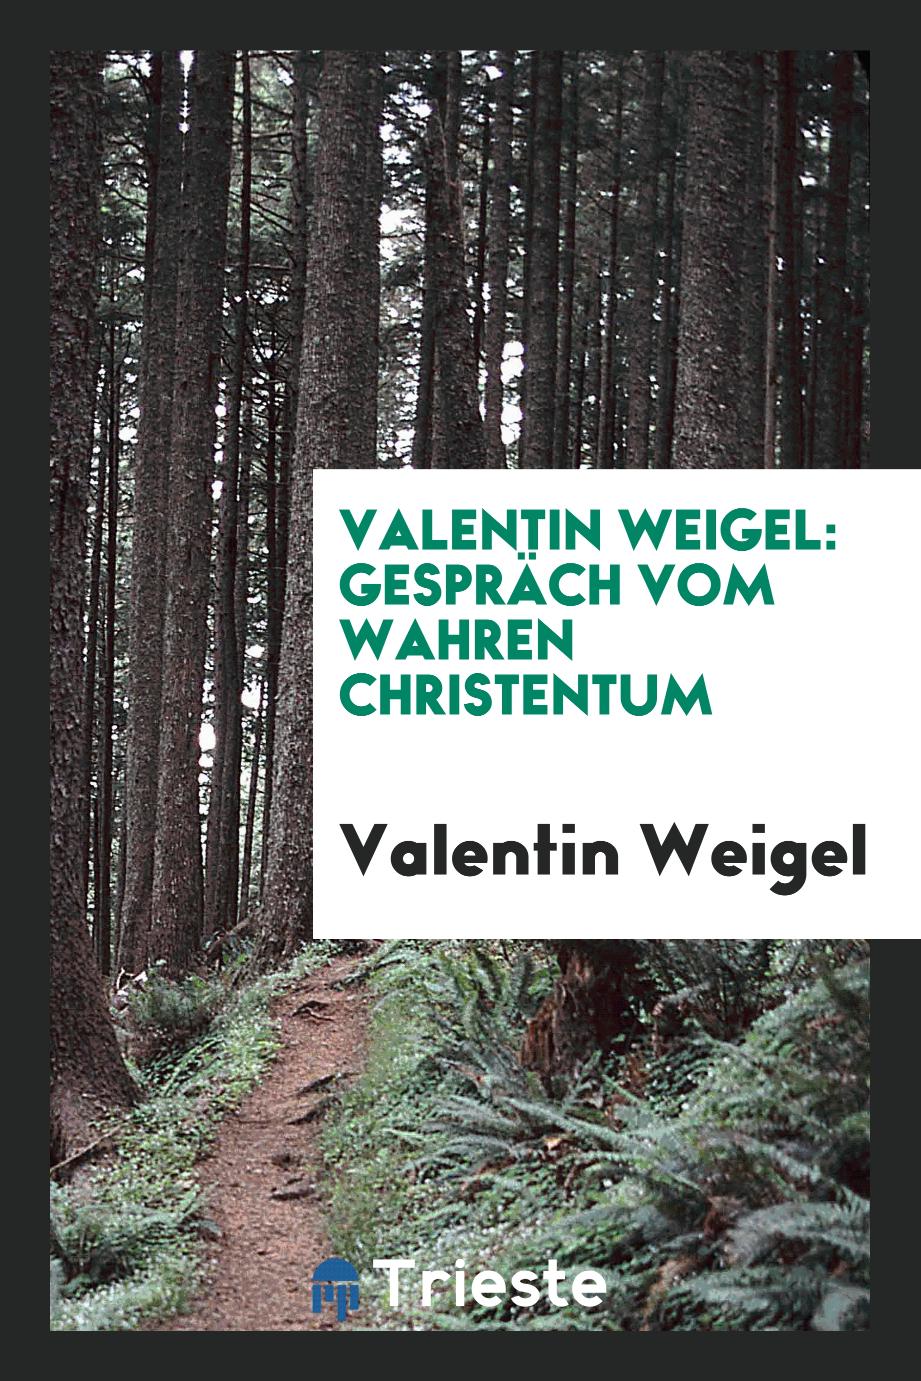 Valentin Weigel: Gespräch vom wahren Christentum